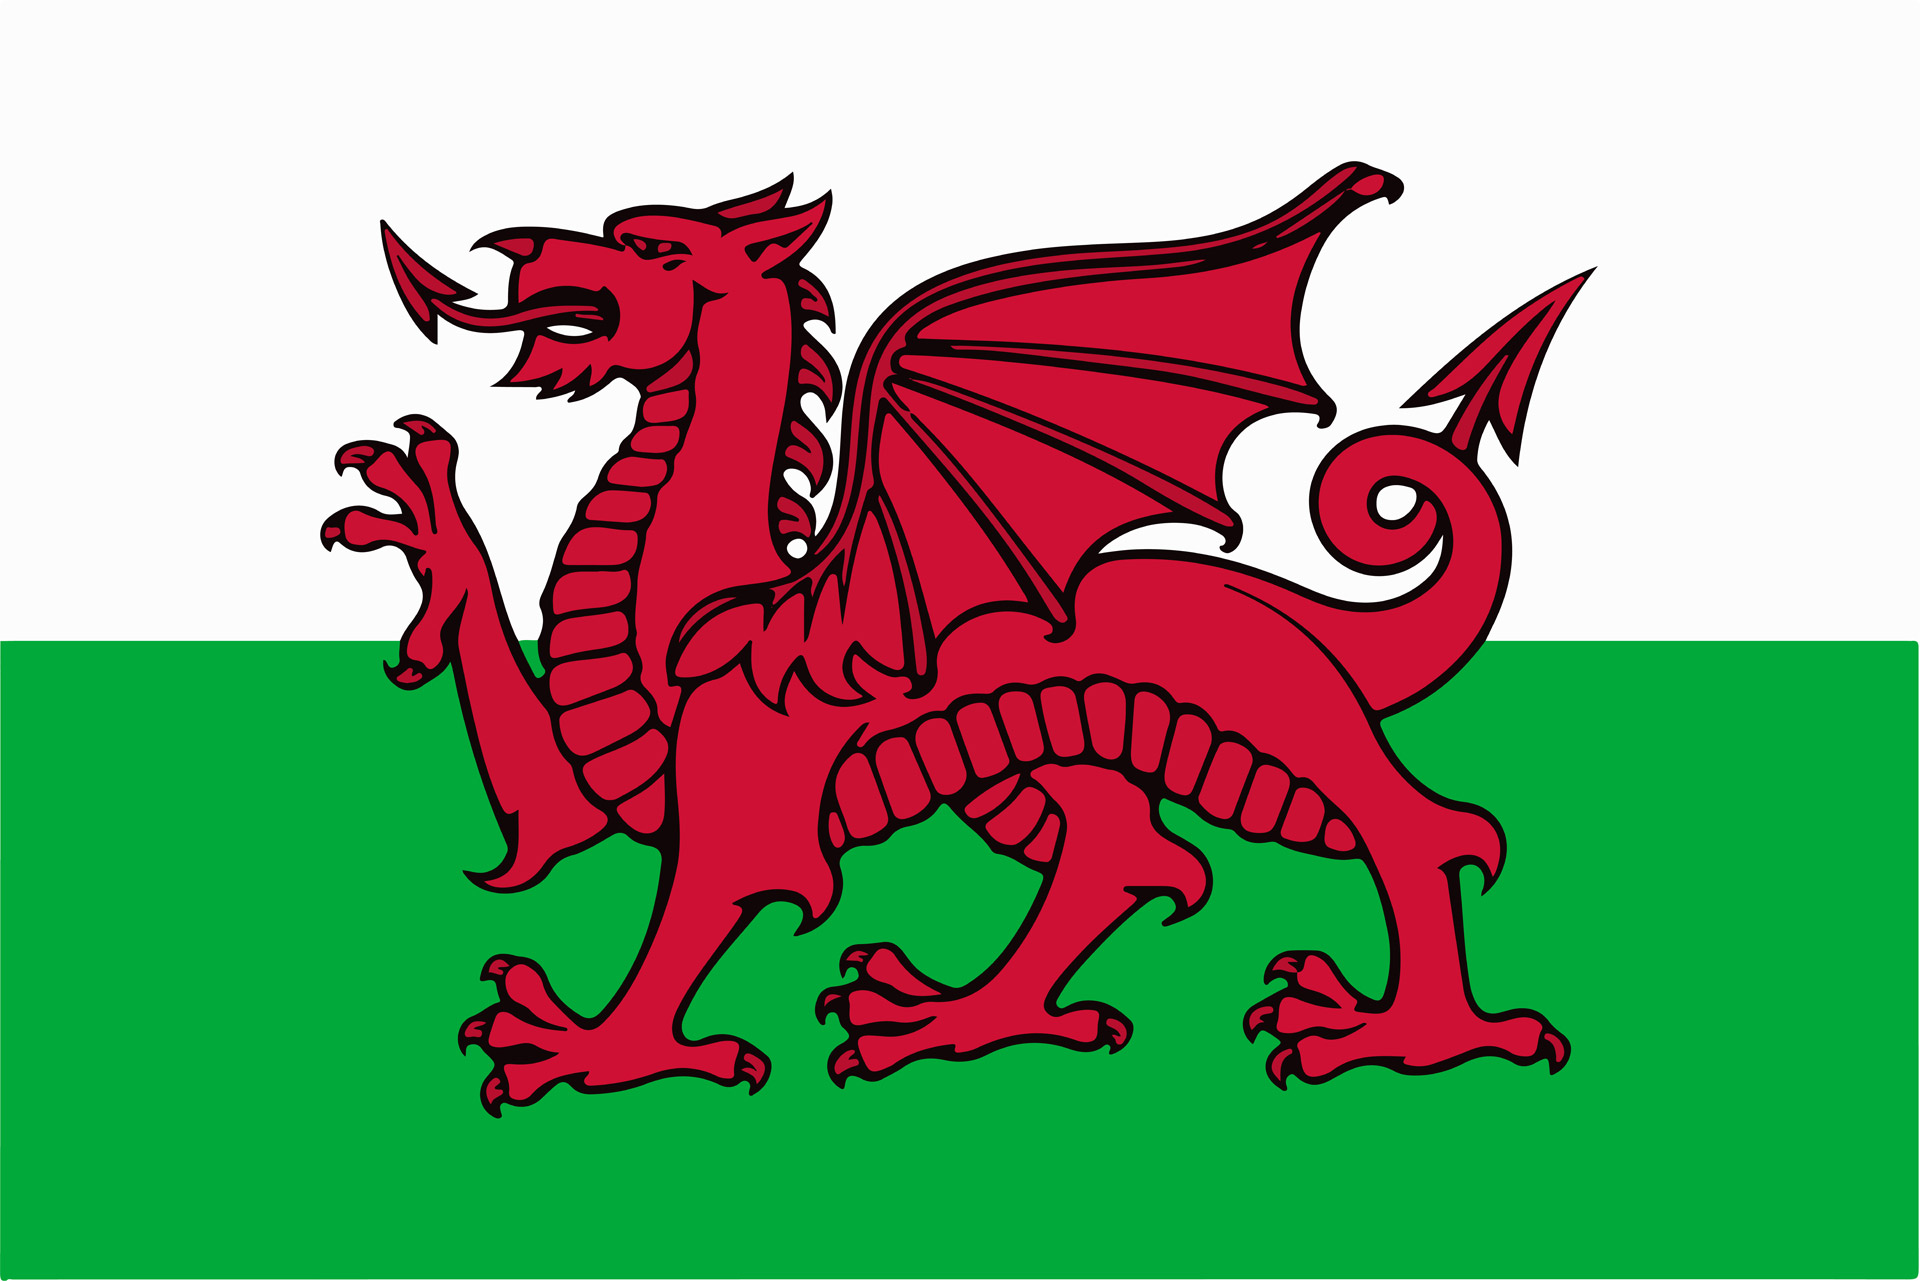 Flaga Walii